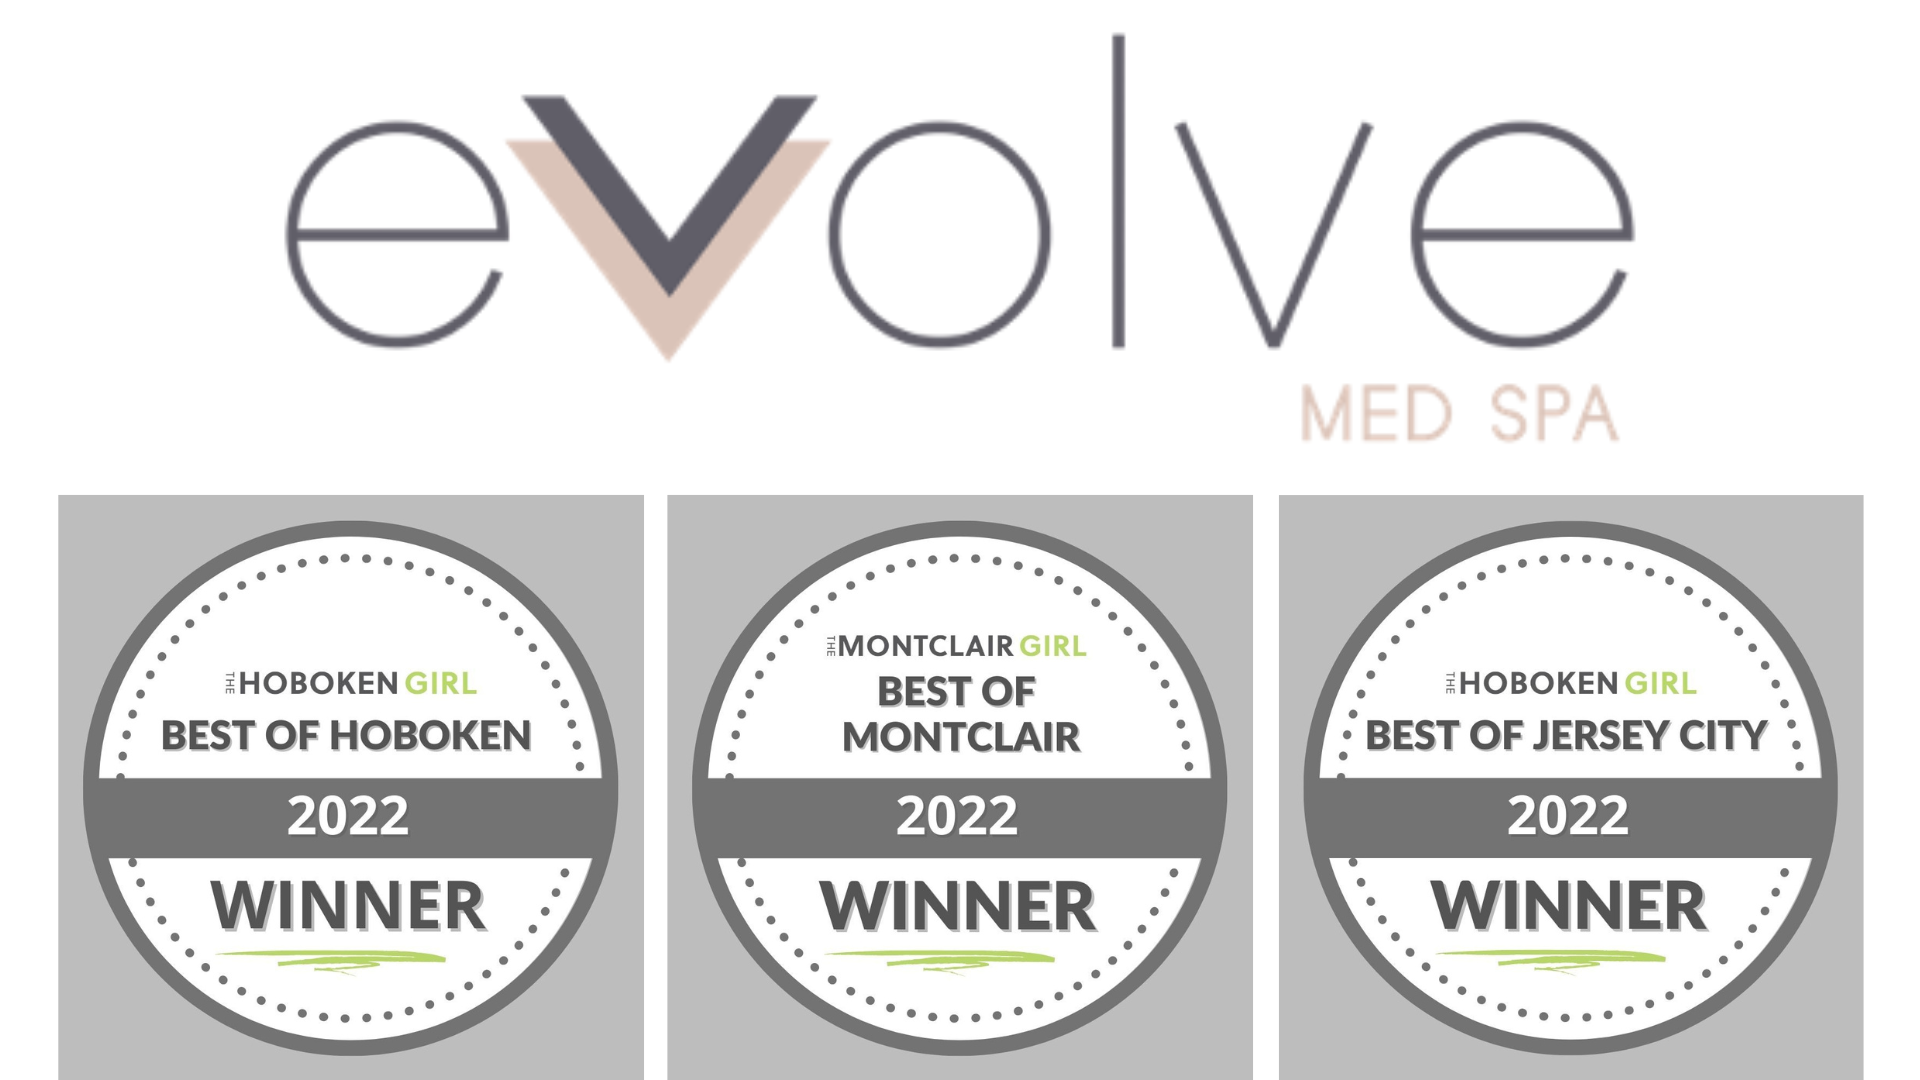 Evolve Med Spa Awarded Four Local Girl Media Group ‘Best Of’ Awards